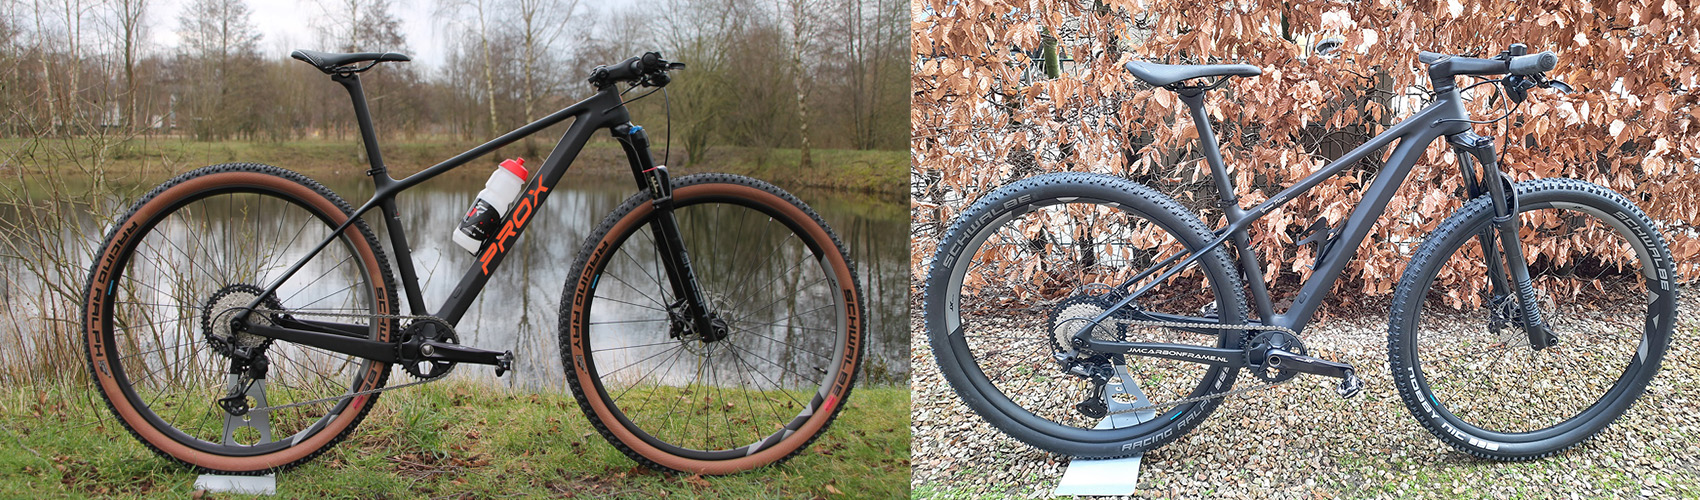 bicicletas completas construidas con cuadro rígido de carbono PXM909